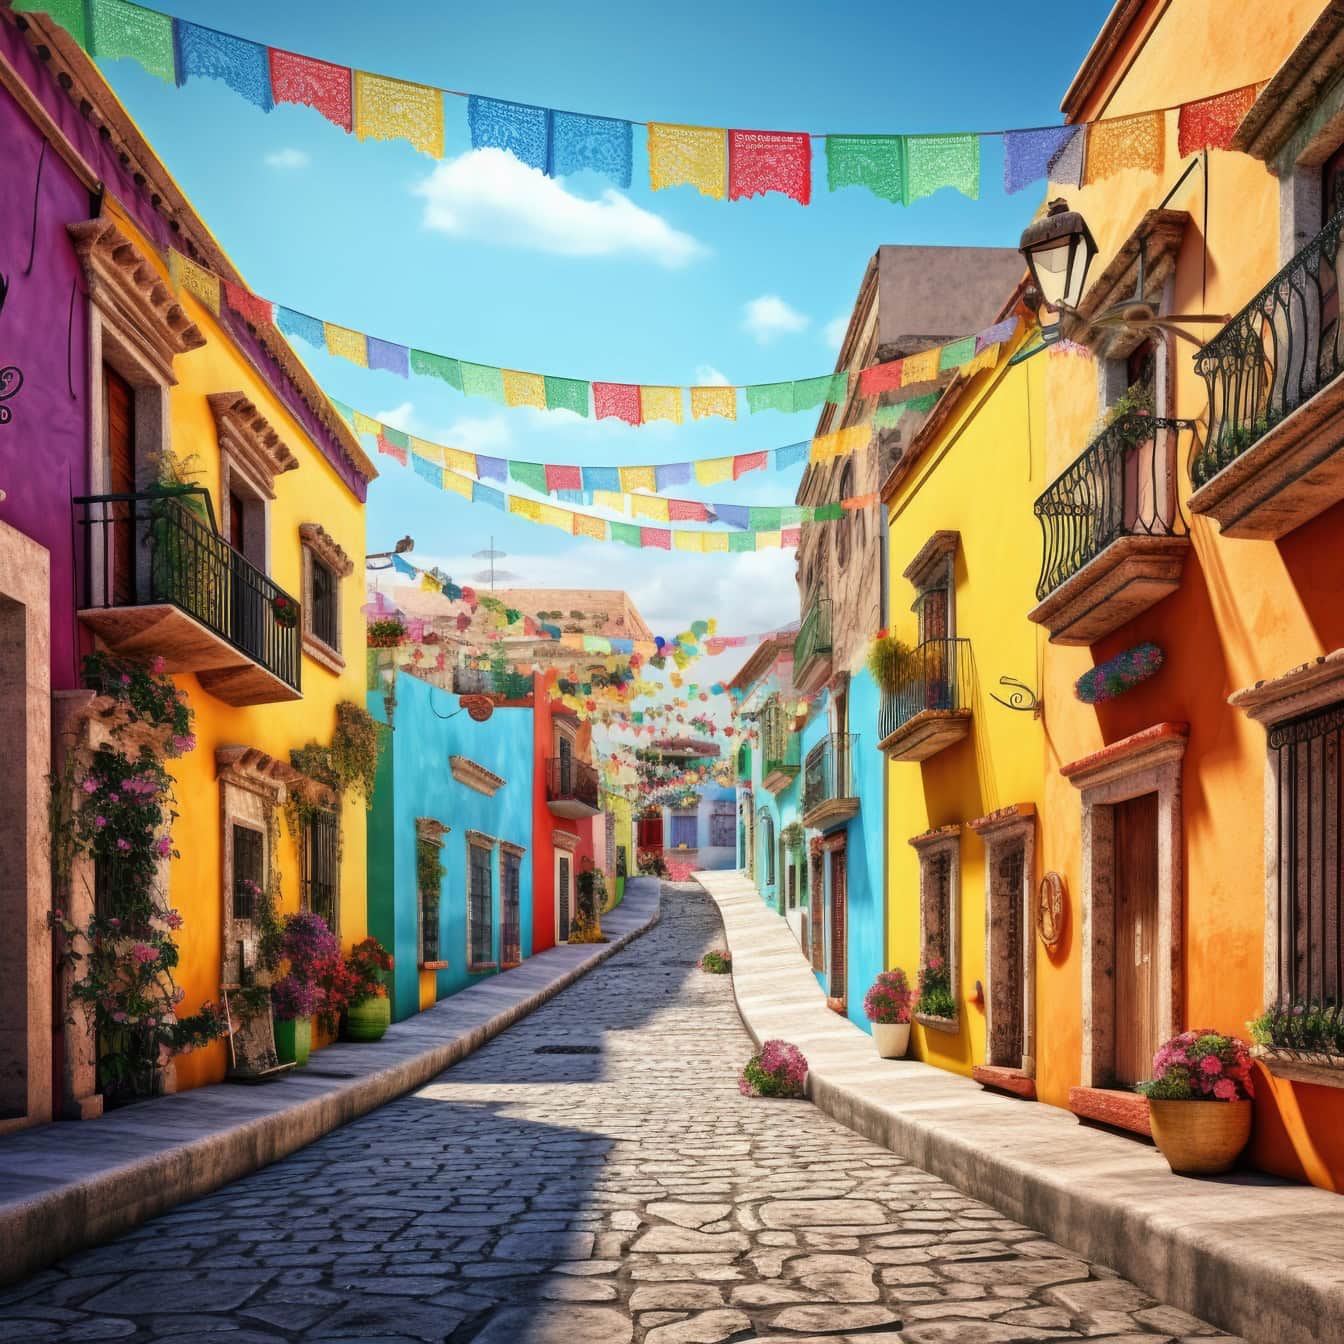 Uma rua da cidade mexicana com edifícios coloridos e bandeiras